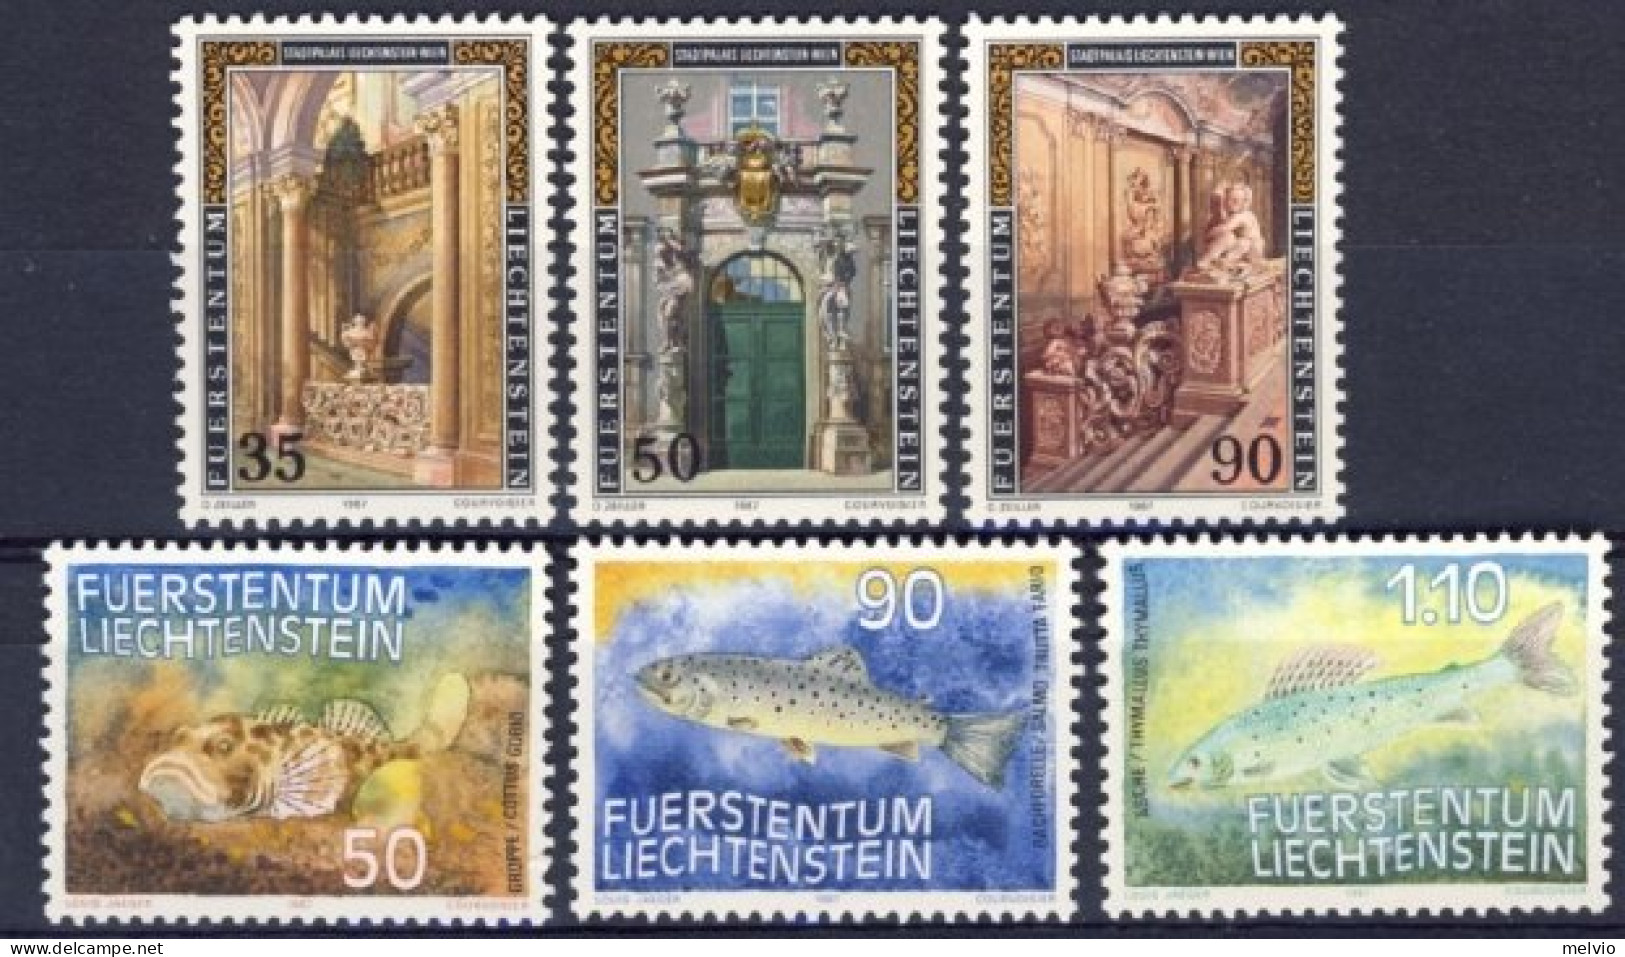 1987-Liechtenstein (MNH=**) 2 Serie 6 Valori Pesci Architettura Religiosa - Nuovi